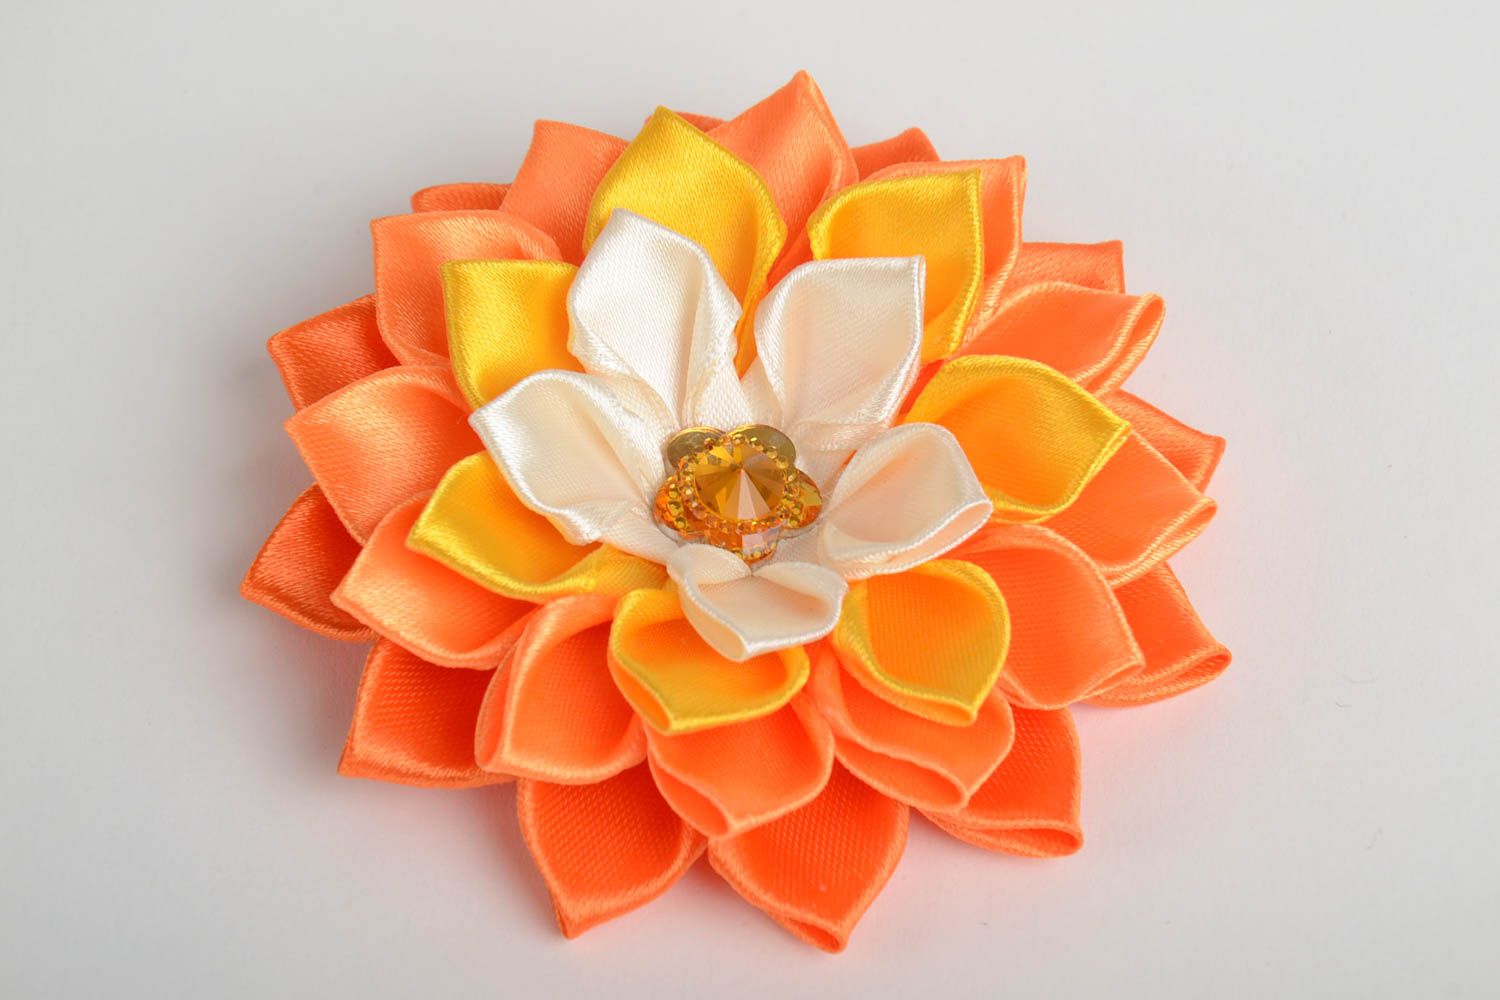 Цветок в технике канзаши заготовка для аксессуара оранжевый крупный хэнд мейд фото 4